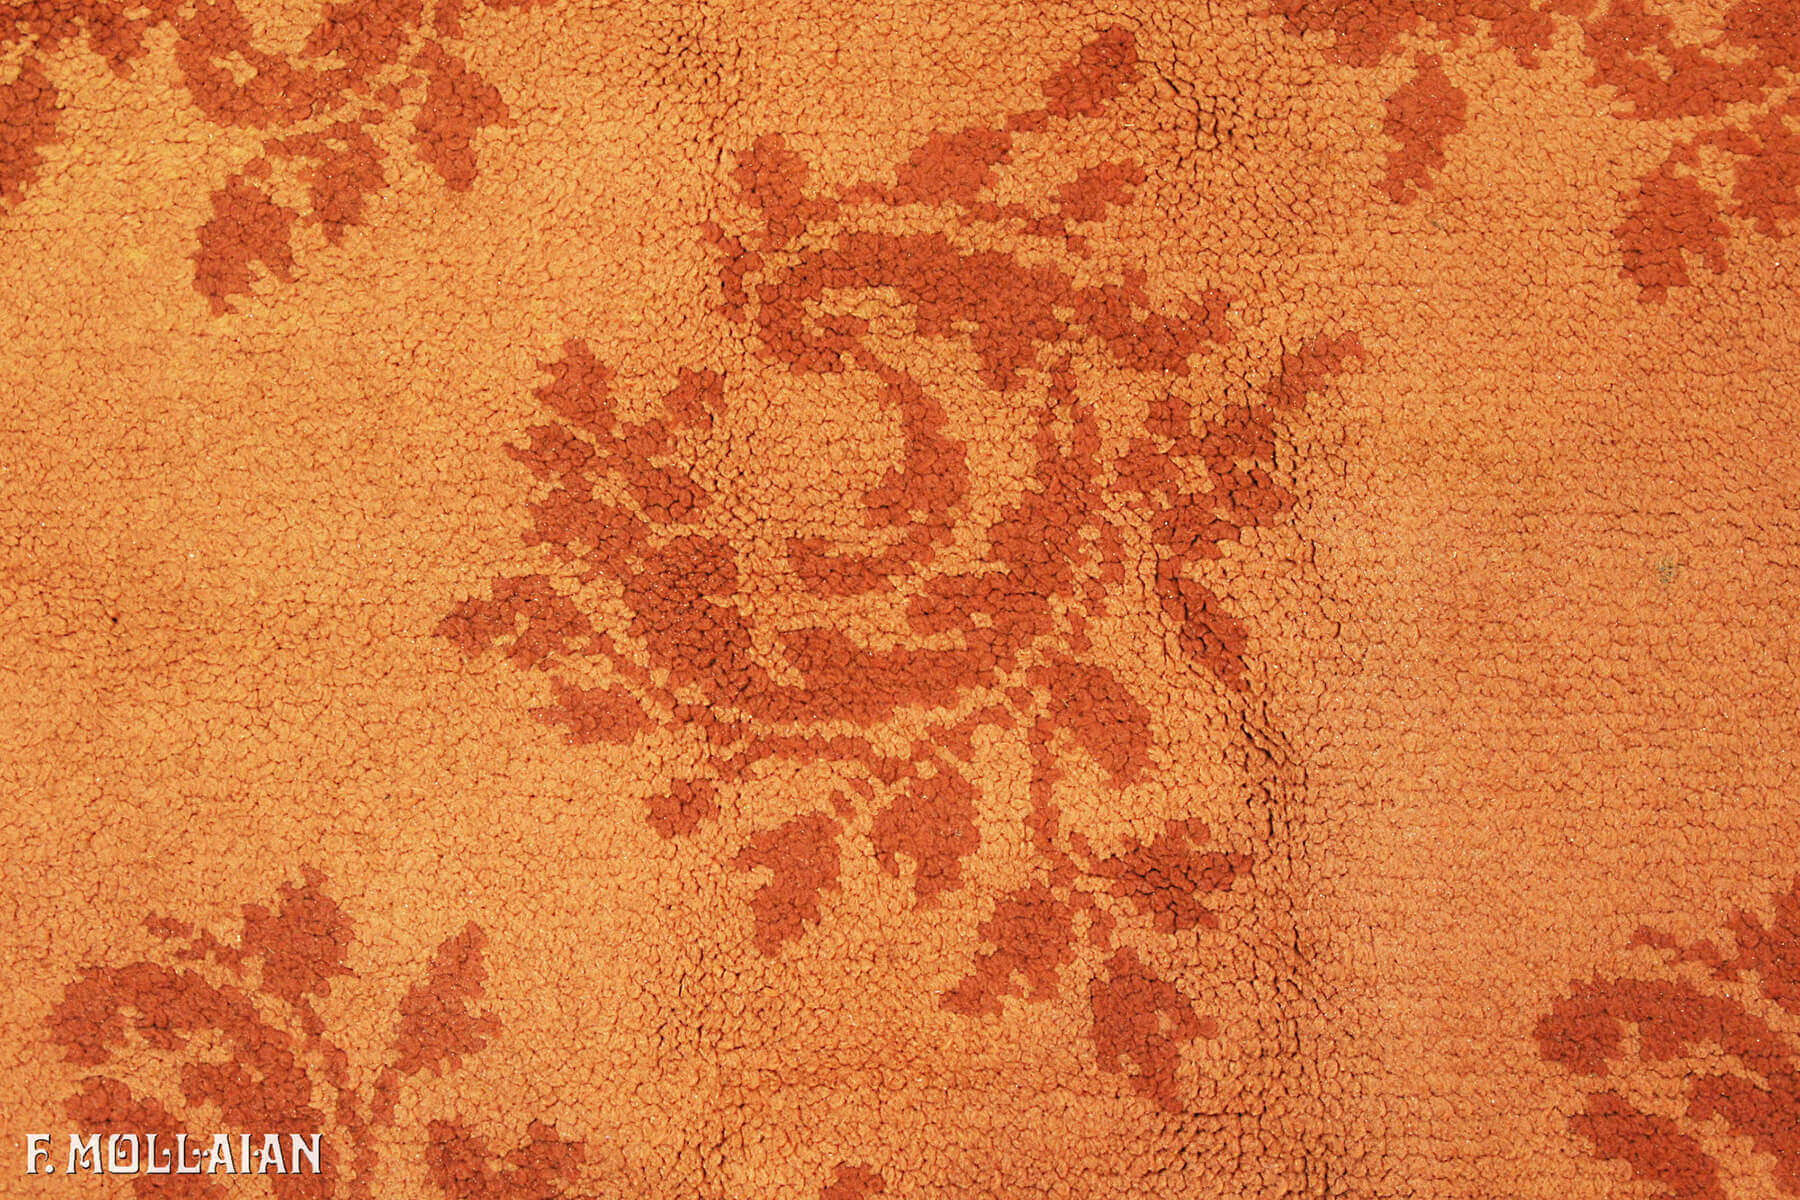 Antique European (Holland) Carpet n°:11640364